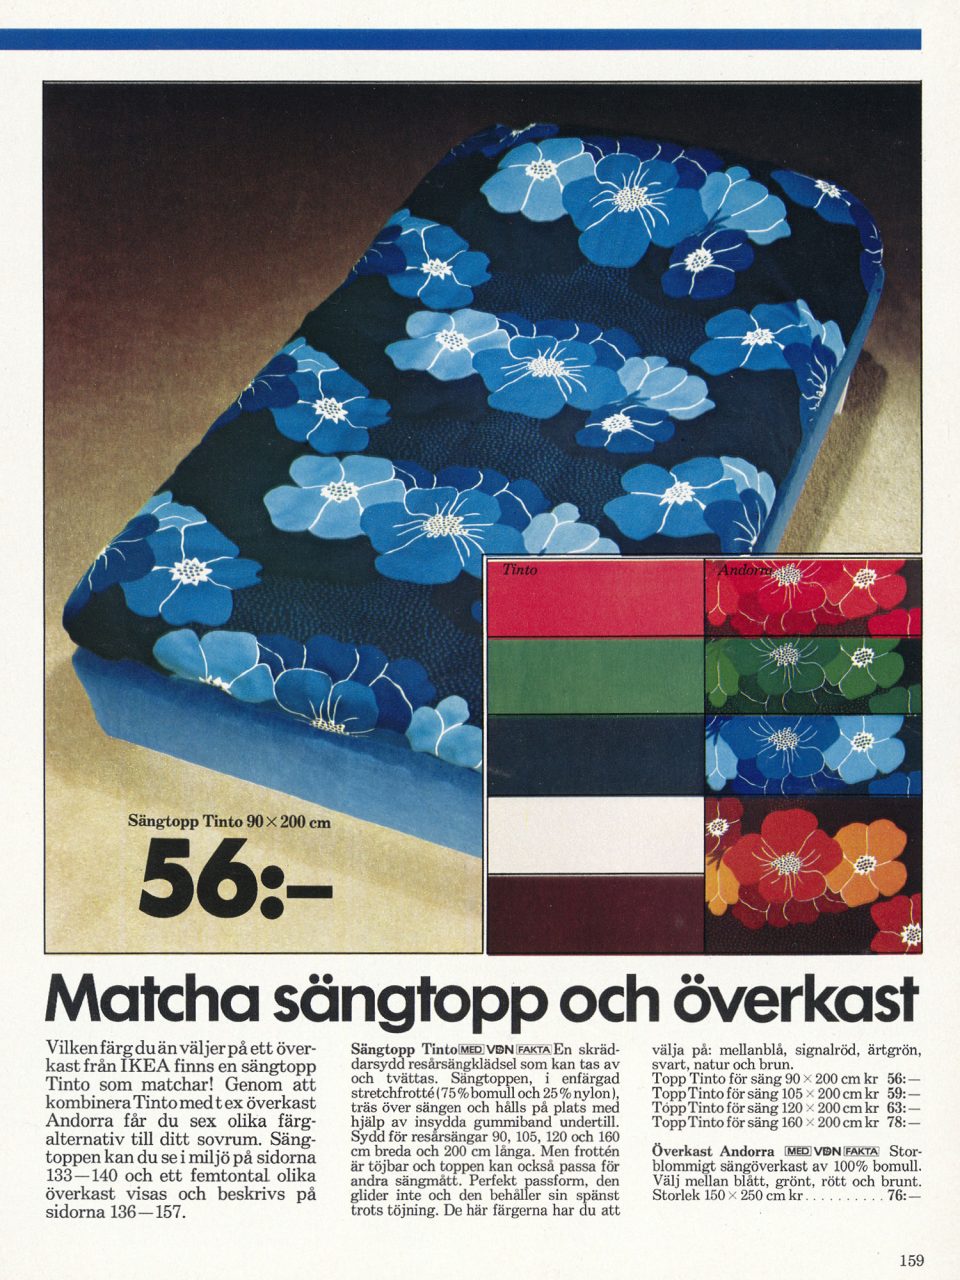 Sida i IKEA katalogen 1977 med sängtopp TINTO med stora blå blommor på svart botten samt exempel på andra färgställningar.